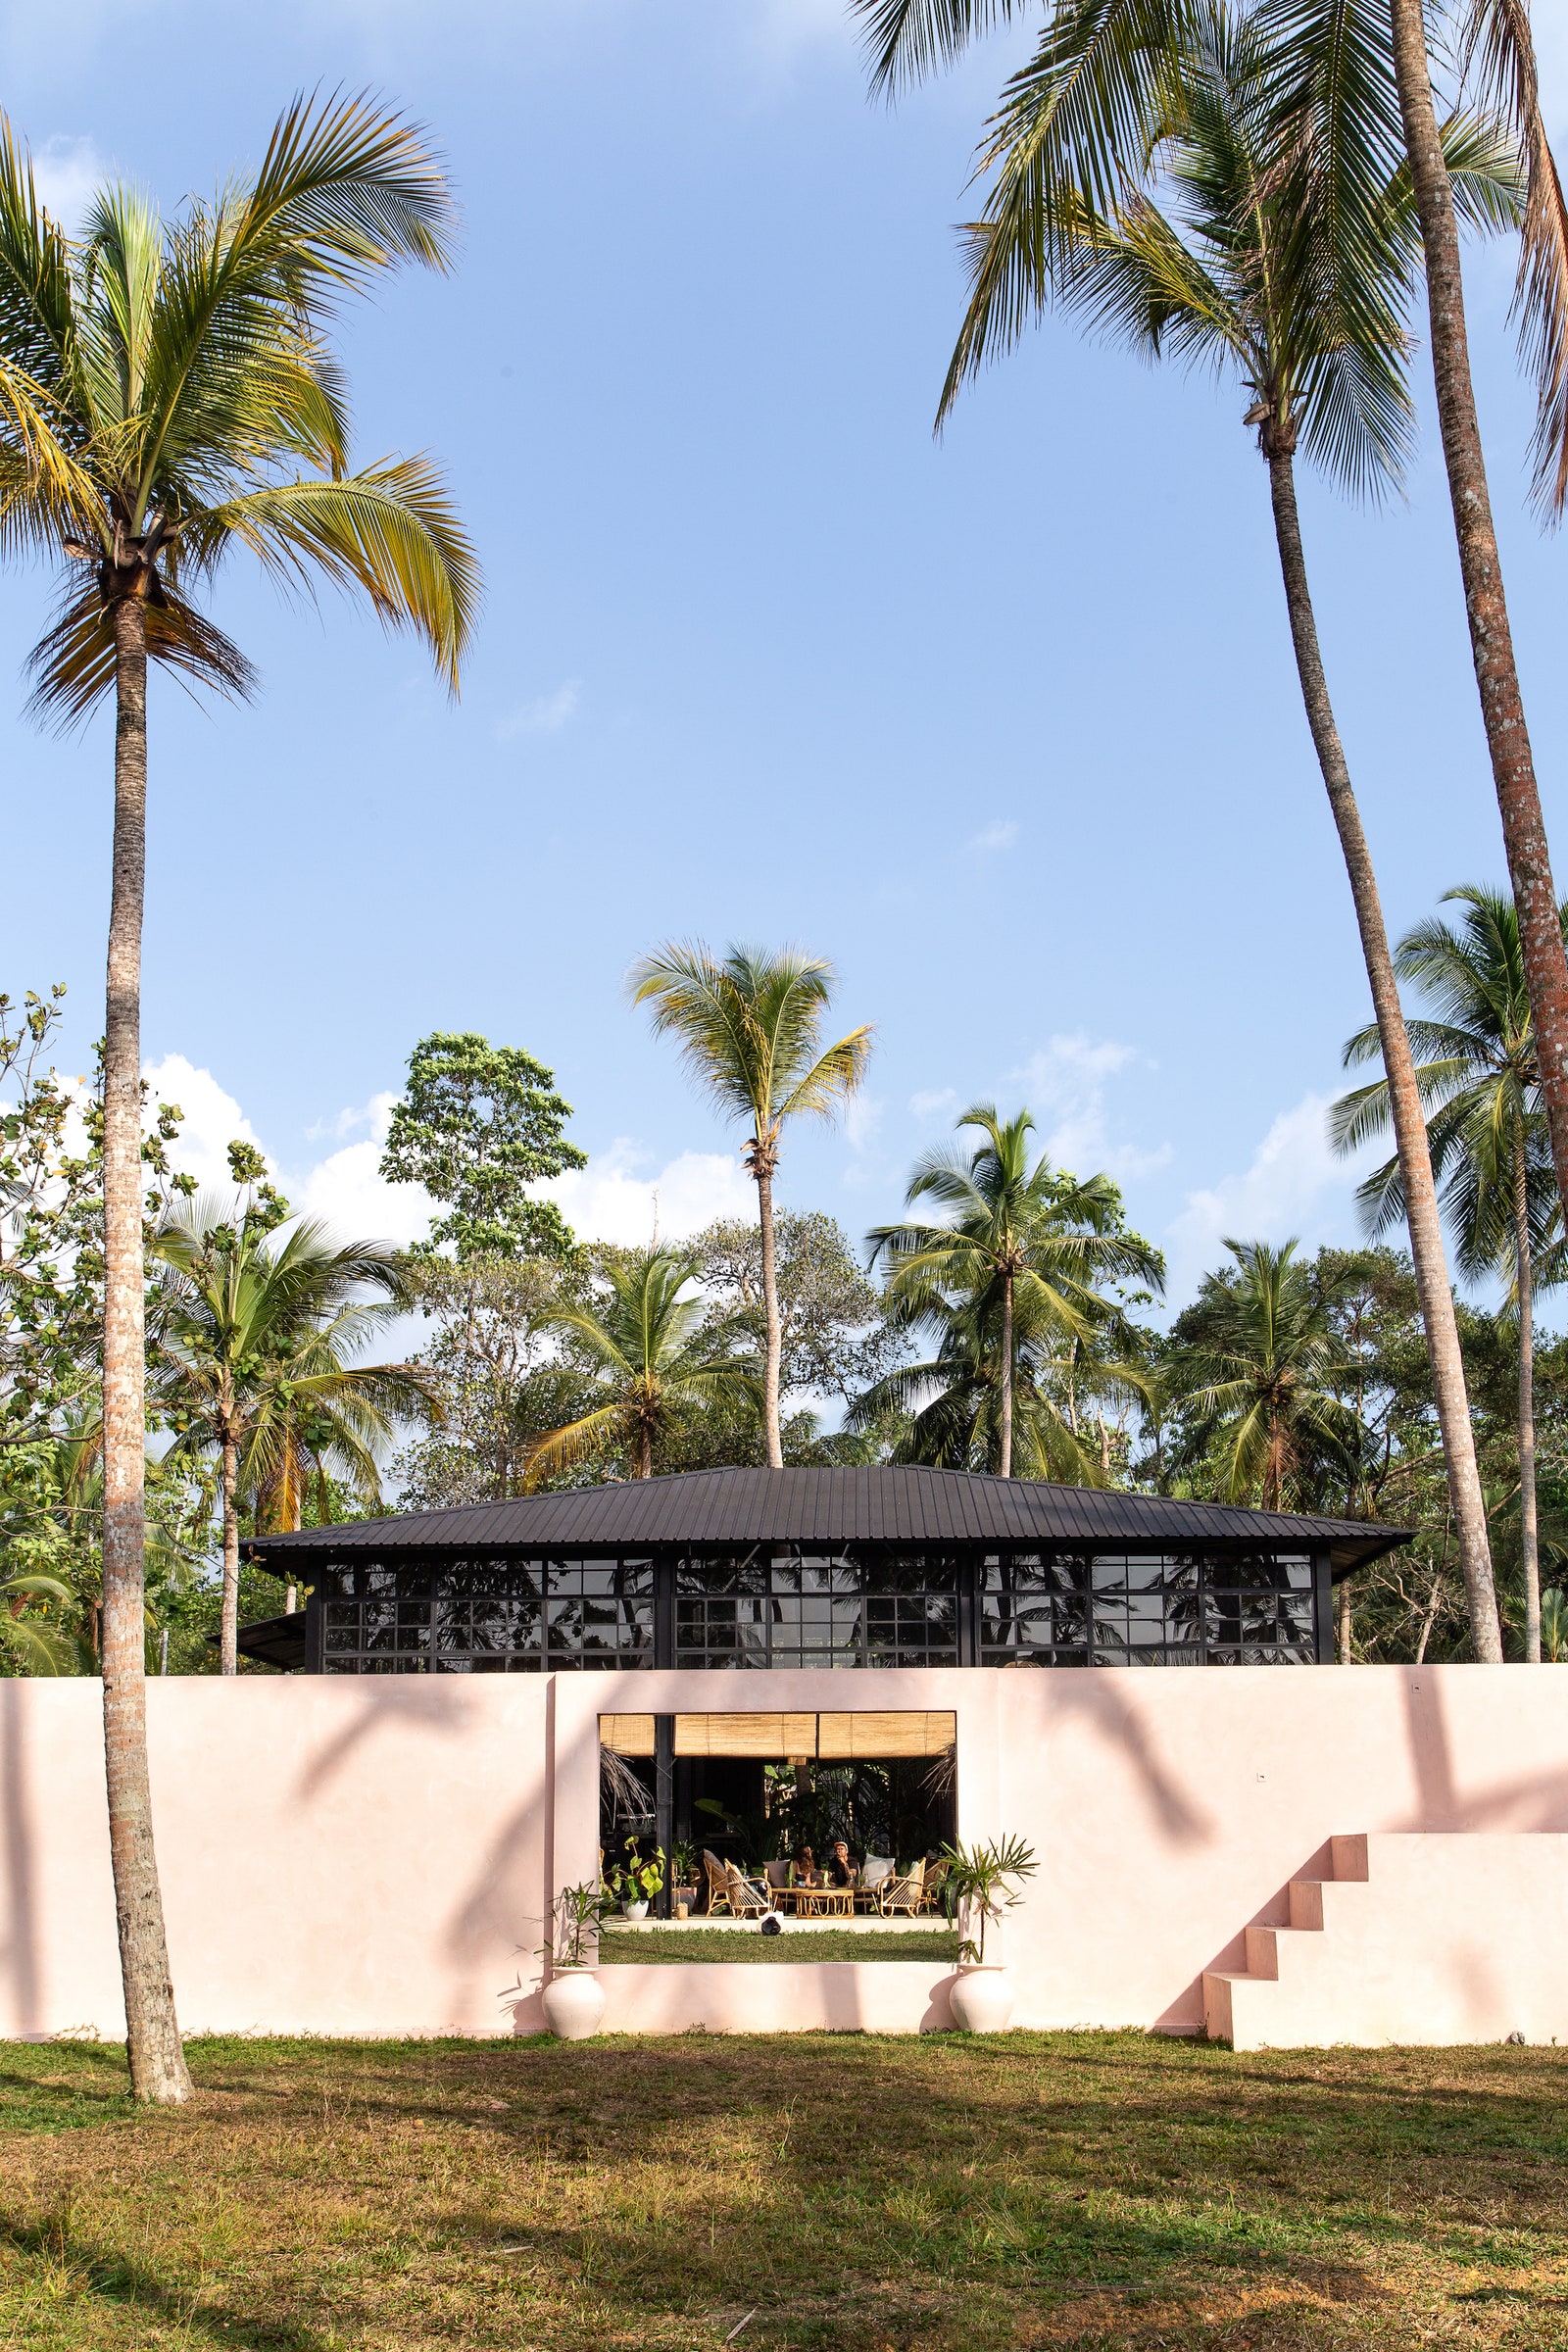 Минимализм в тропиках отель Palm на ШриЛанке